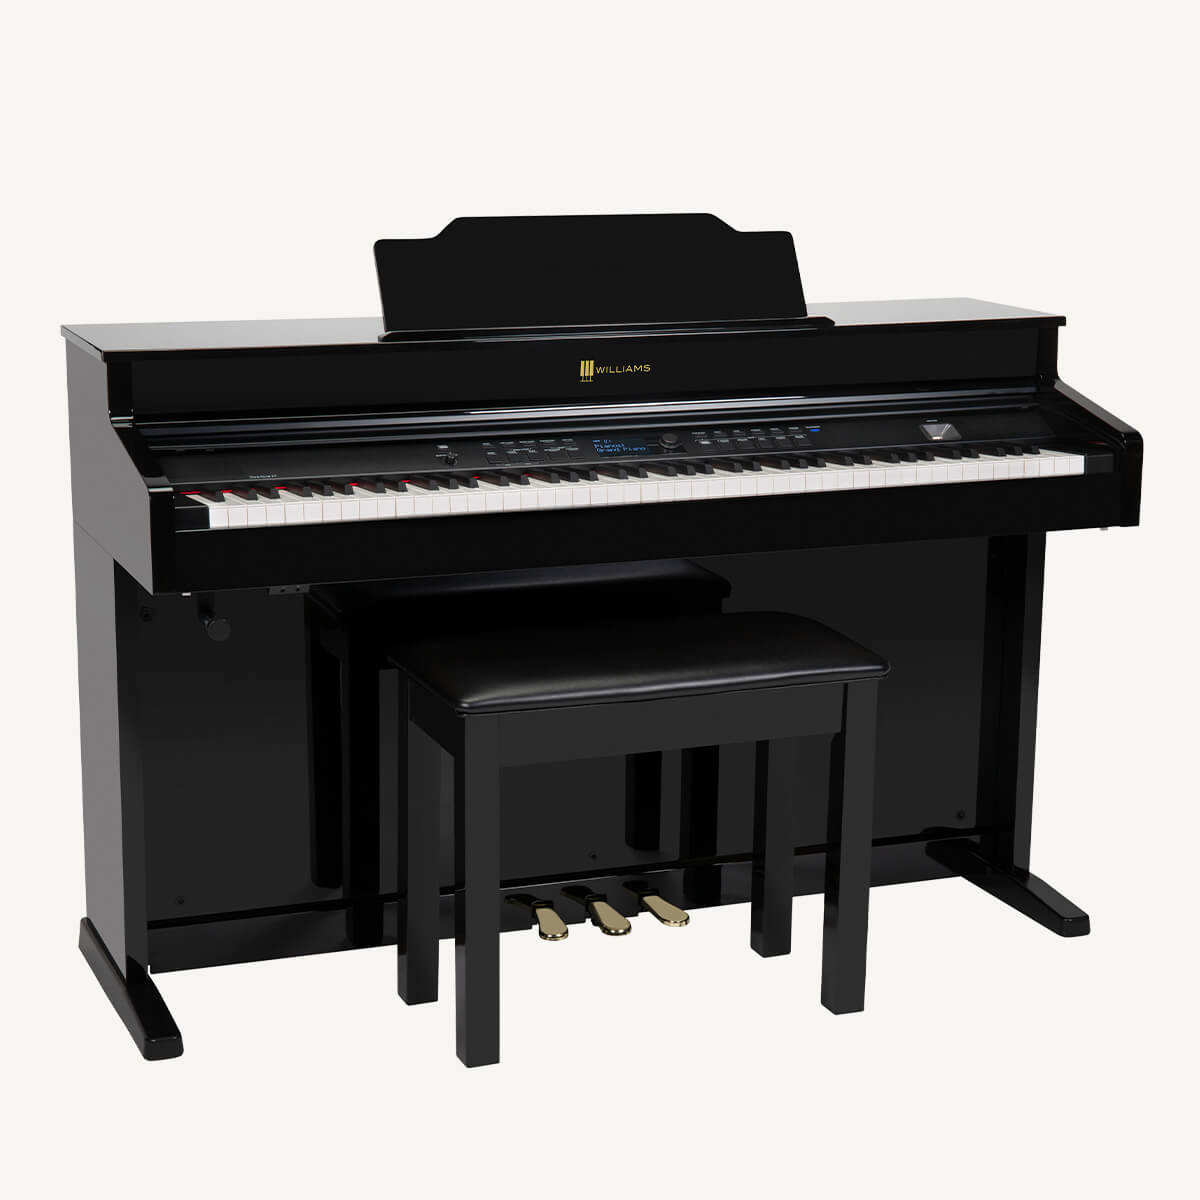 Williams Overture III digital console piano black right.